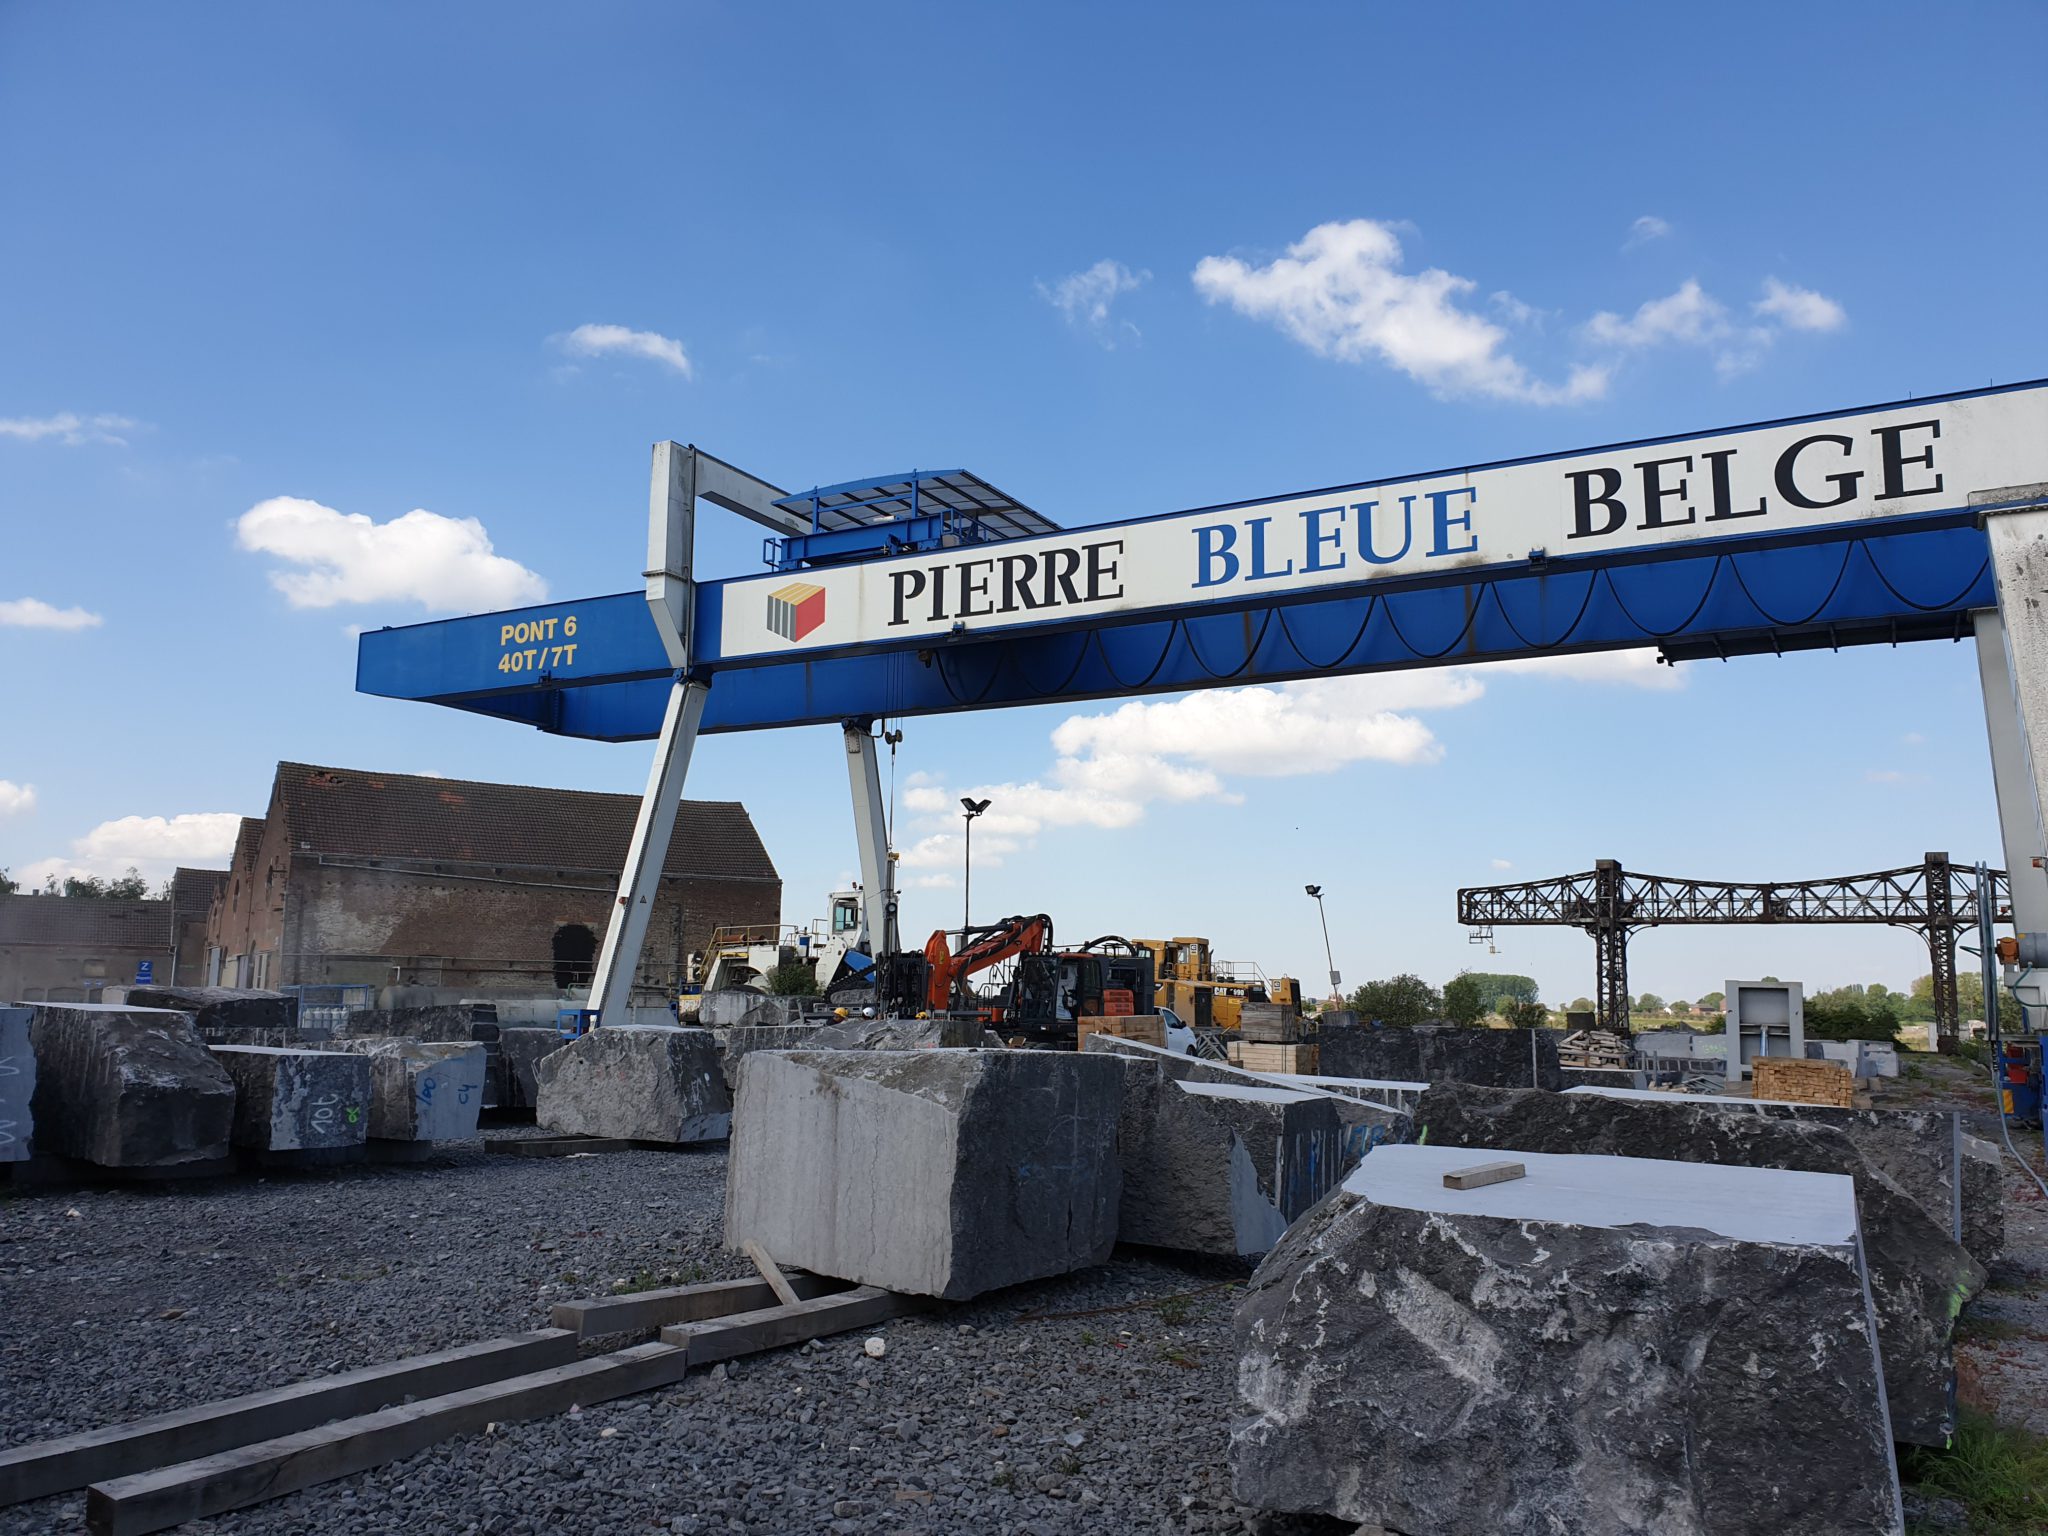 350-jarig bestaan Les Carrières de la Pierre Bleue Belge